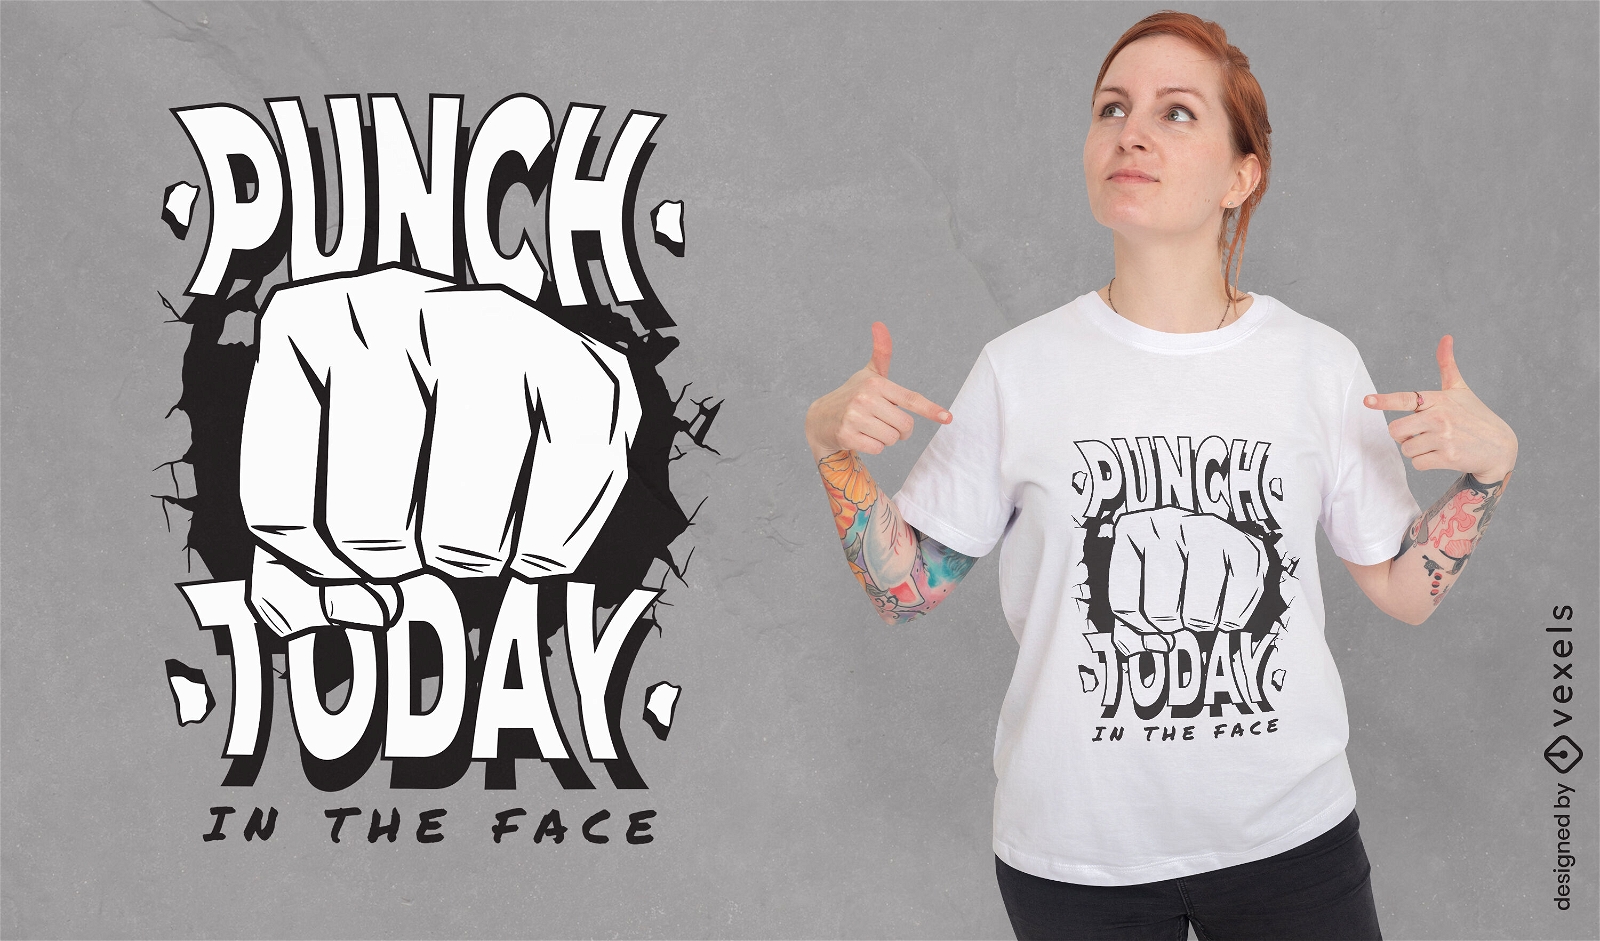 Golpee hoy en la cara diseño de camiseta de cita motivacional